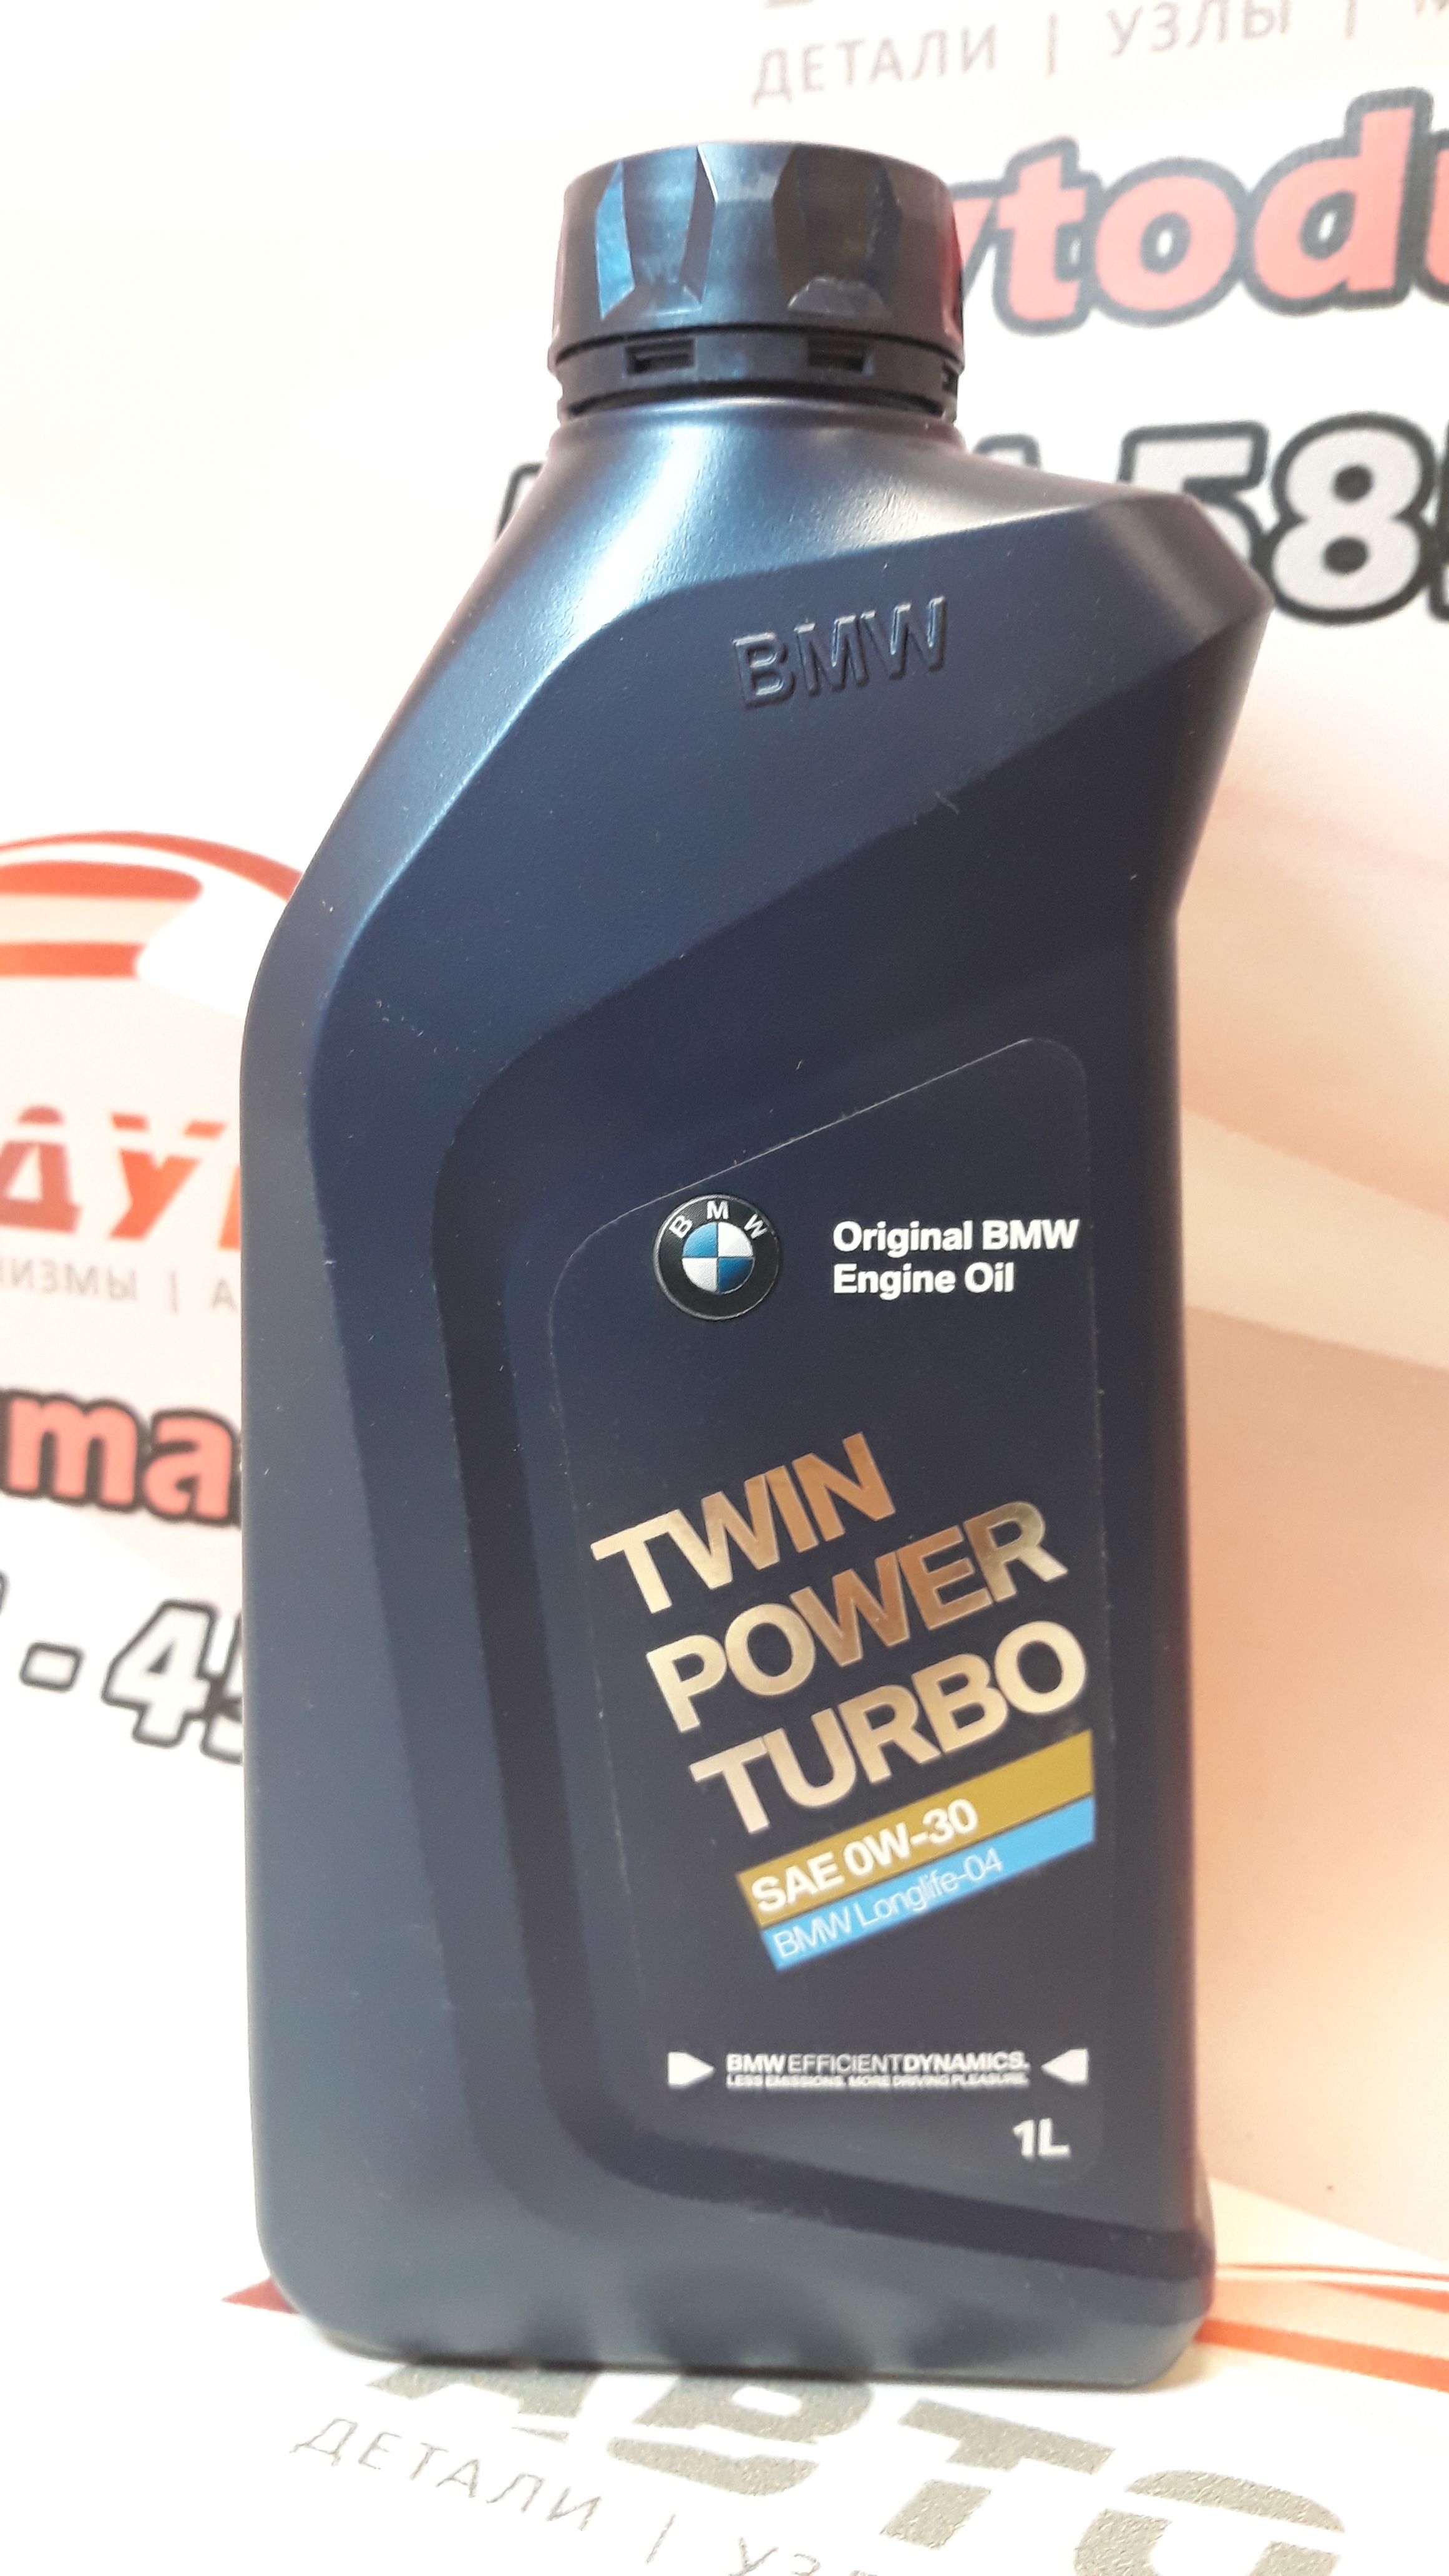 BMW Twinpower Tubo Longlife-04 0W-30, 1л